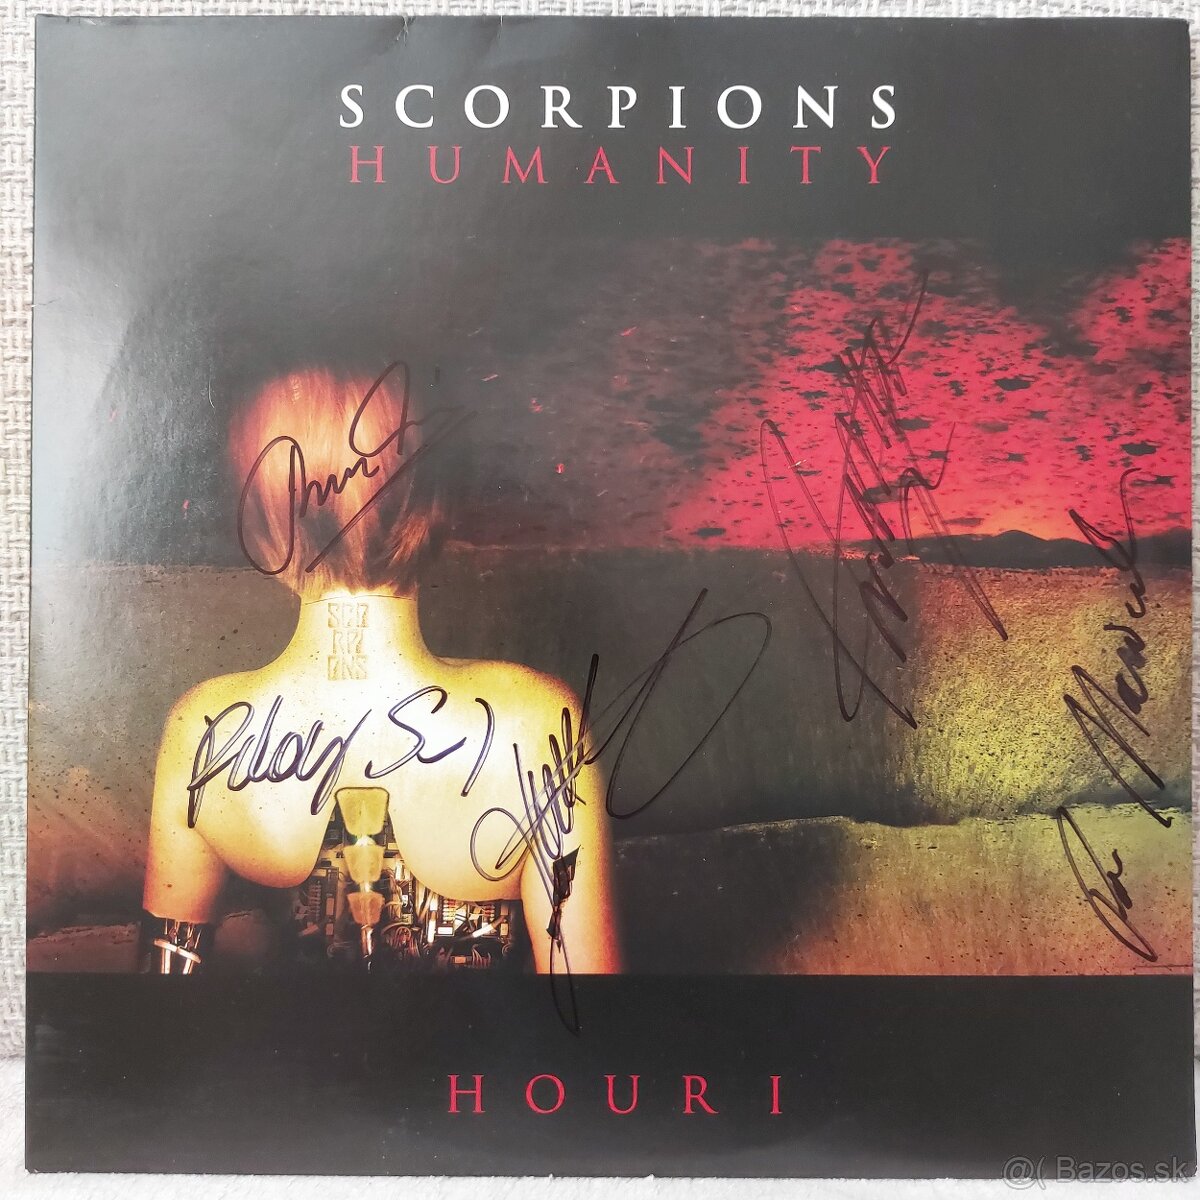 LP Scorpions Humanity Hour I (podpísaná)